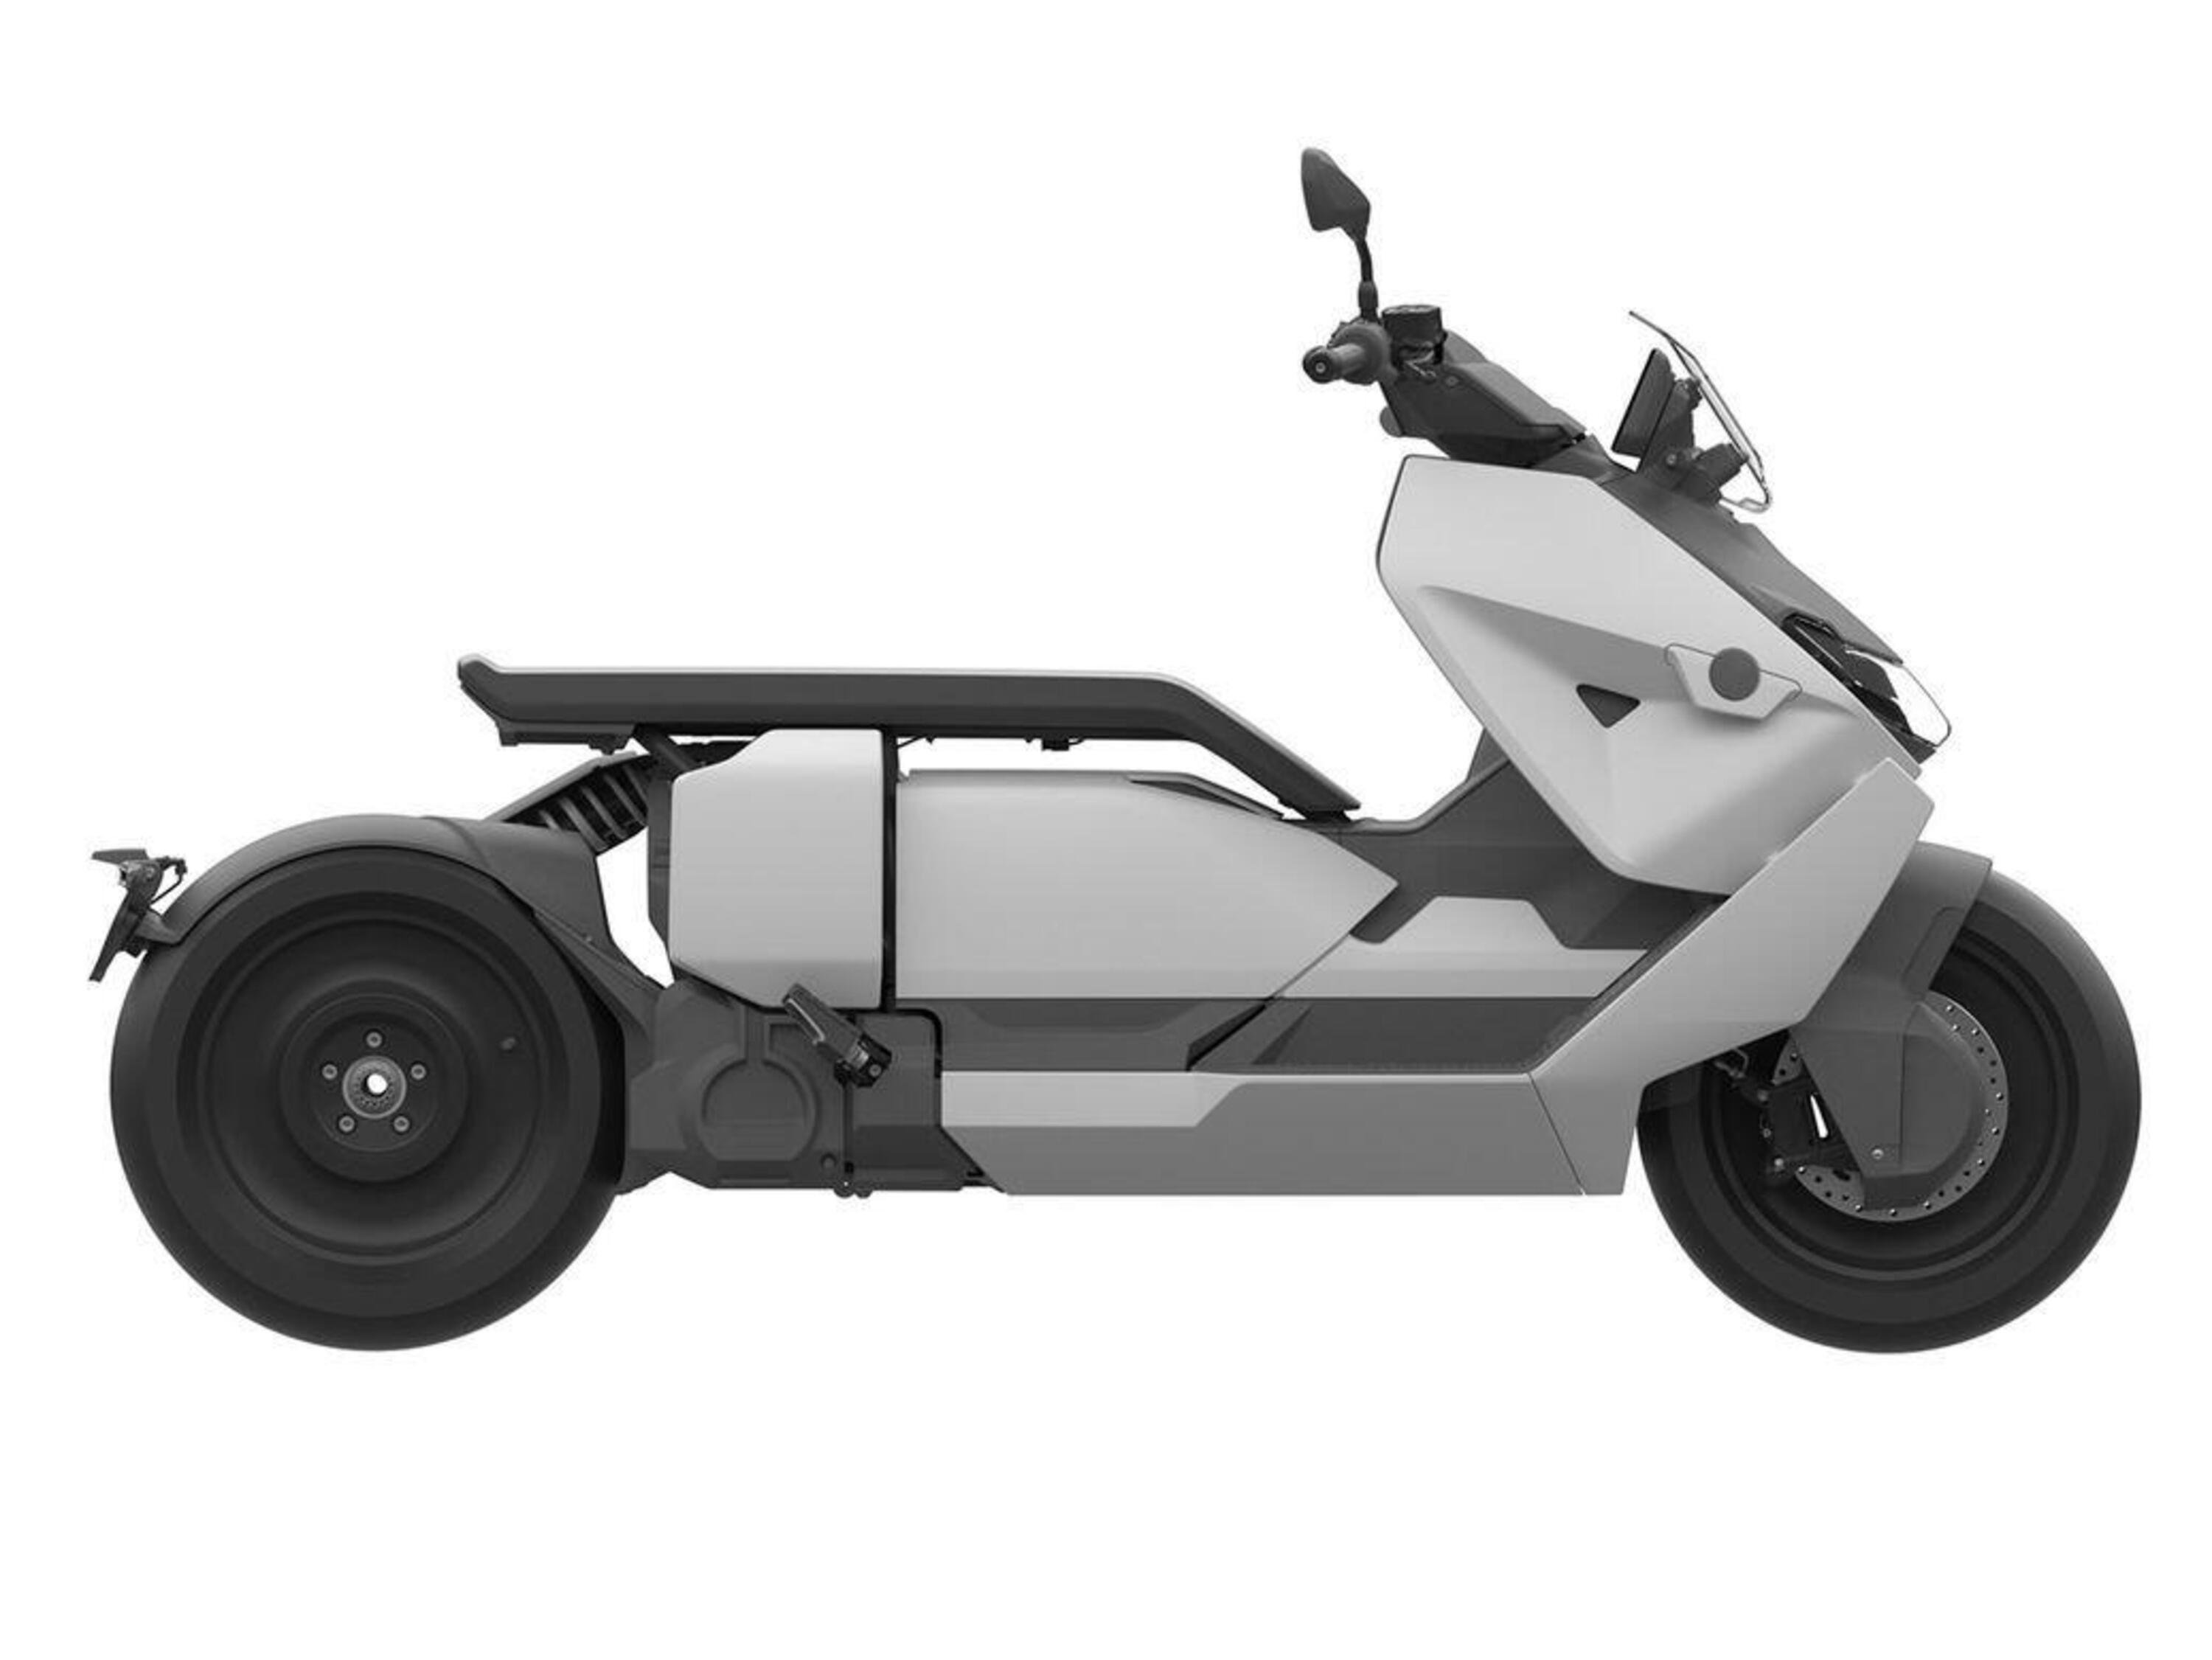 BMW CE 04. Pronto per la produzione lo scooter elettrico bavarese